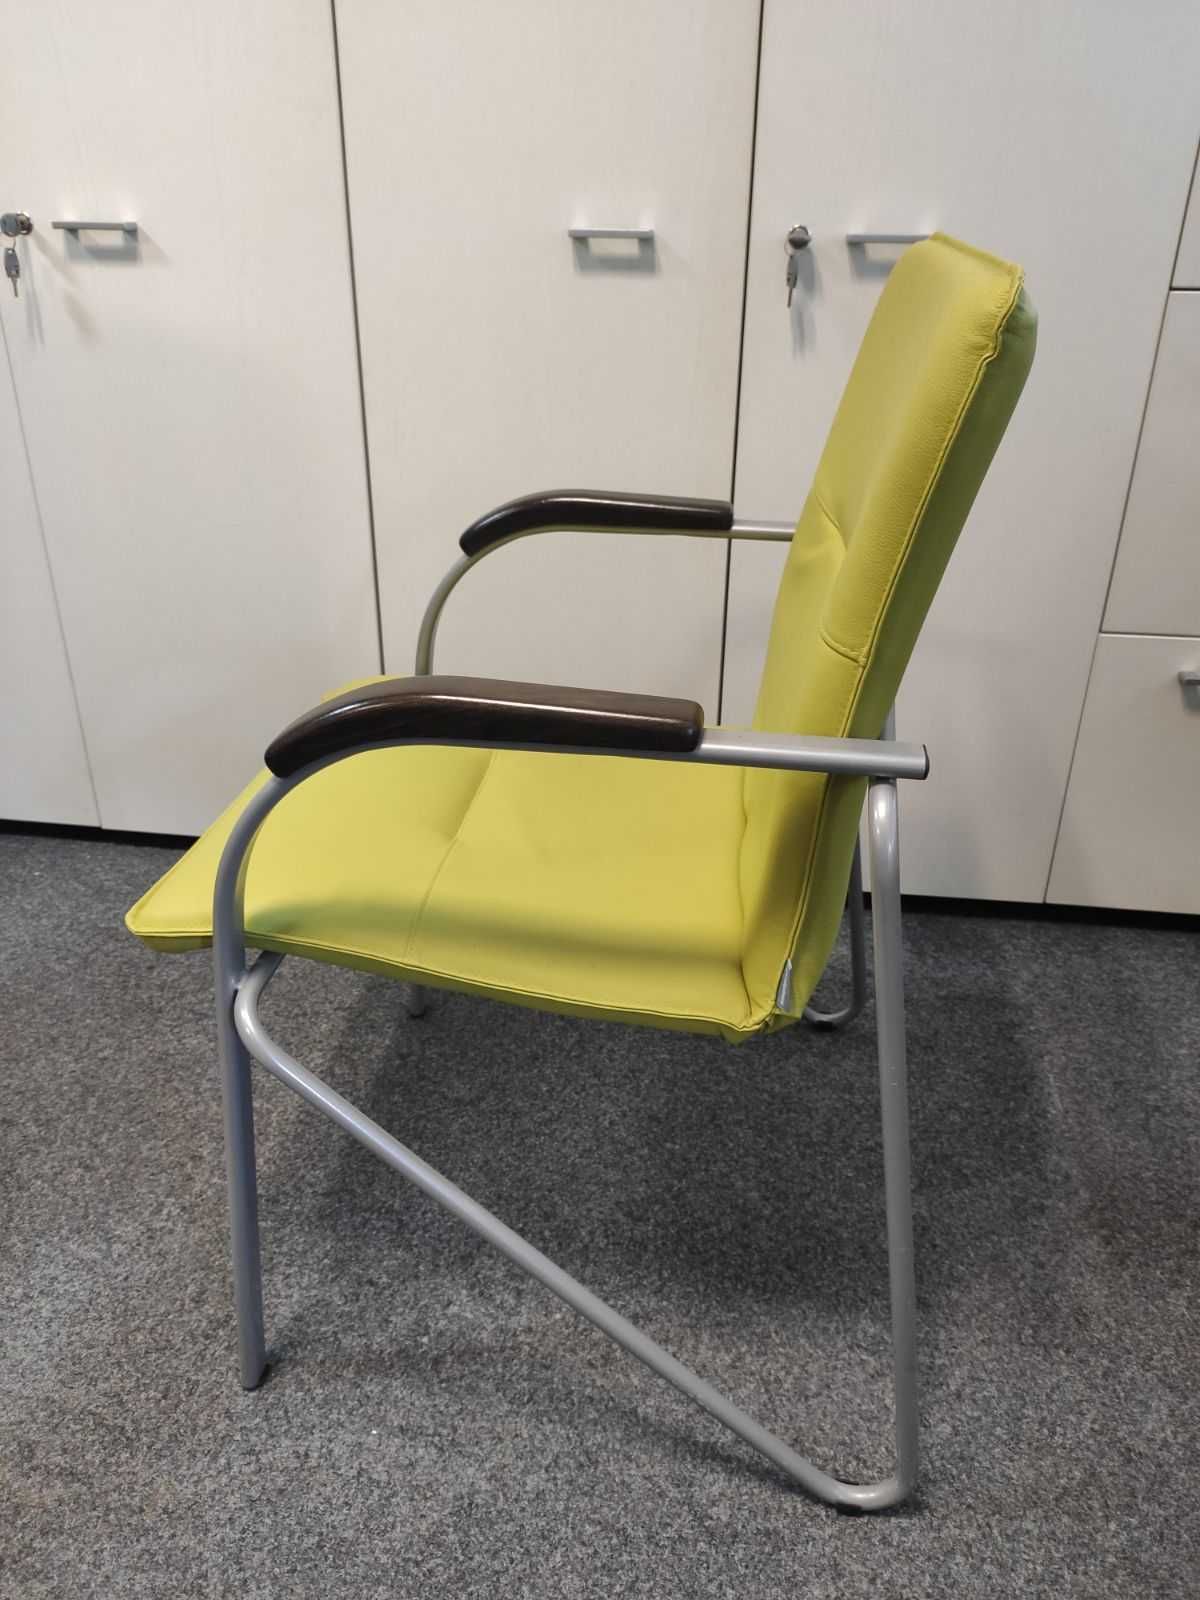 Limonkowe krzesło konferencyjne 11 szt.